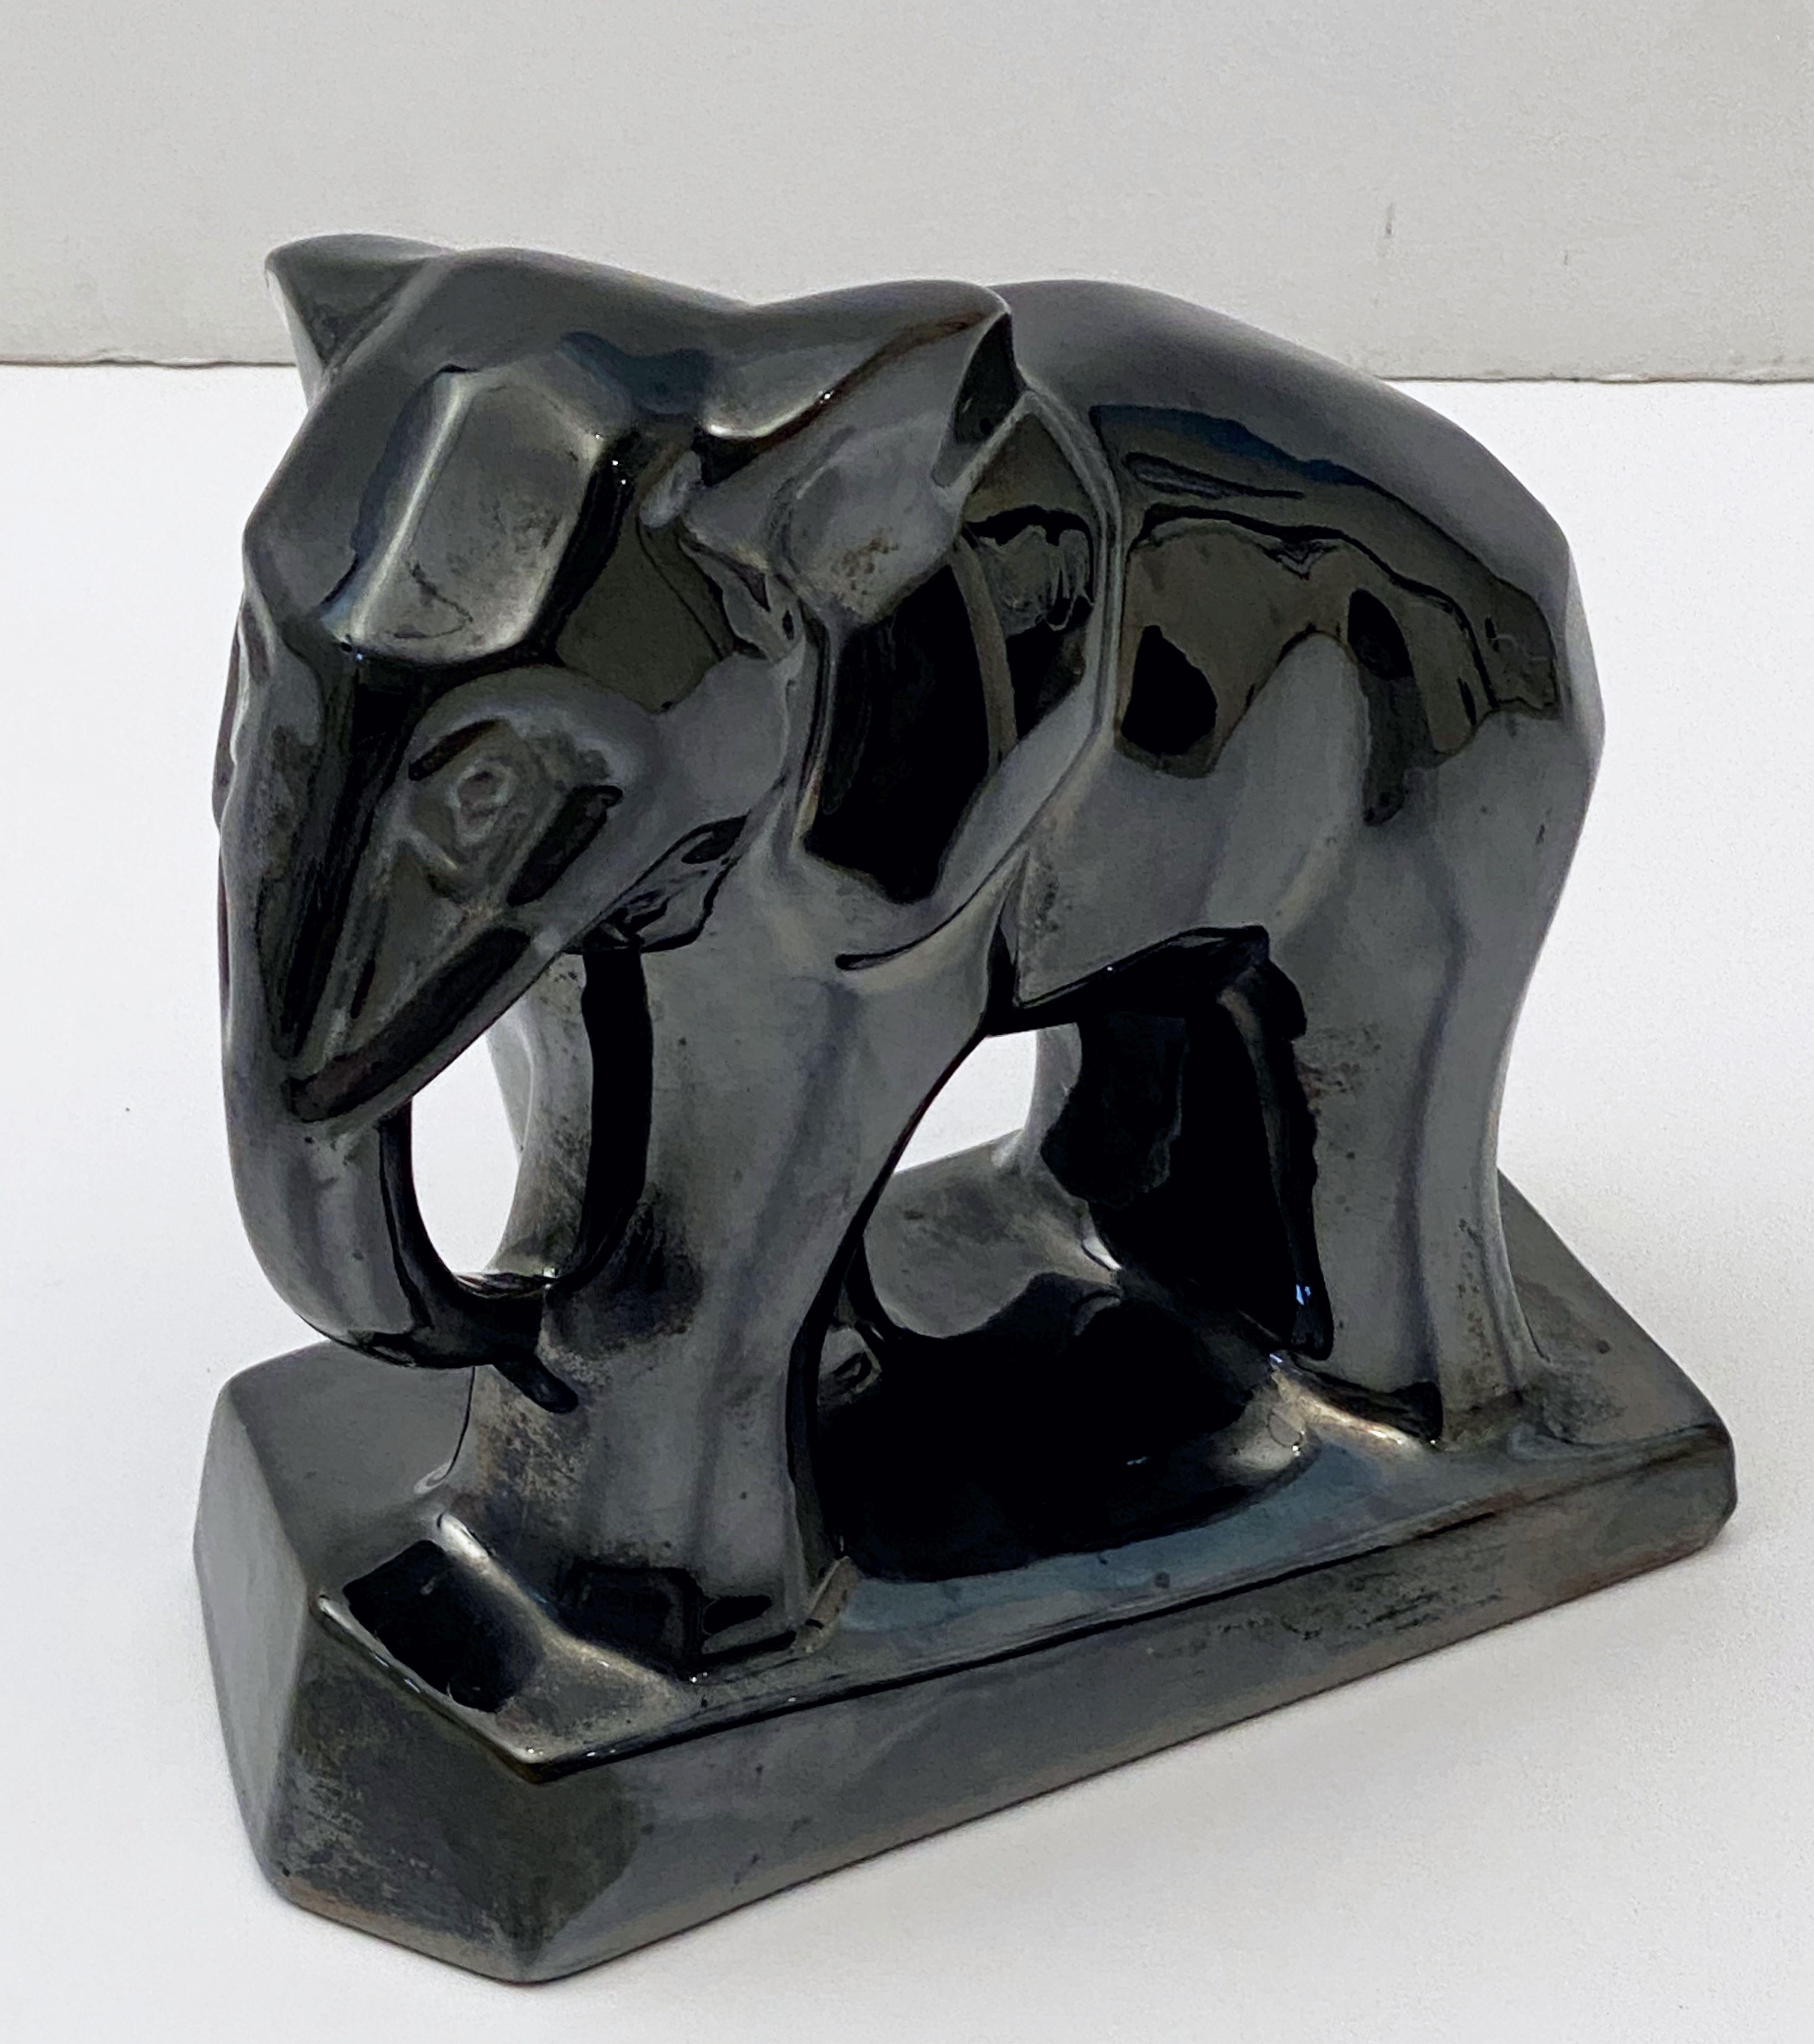 Une belle figurine d'éléphant Art Déco française de style cubiste avec une glaçure céramique noire irisée et lustrée.

   